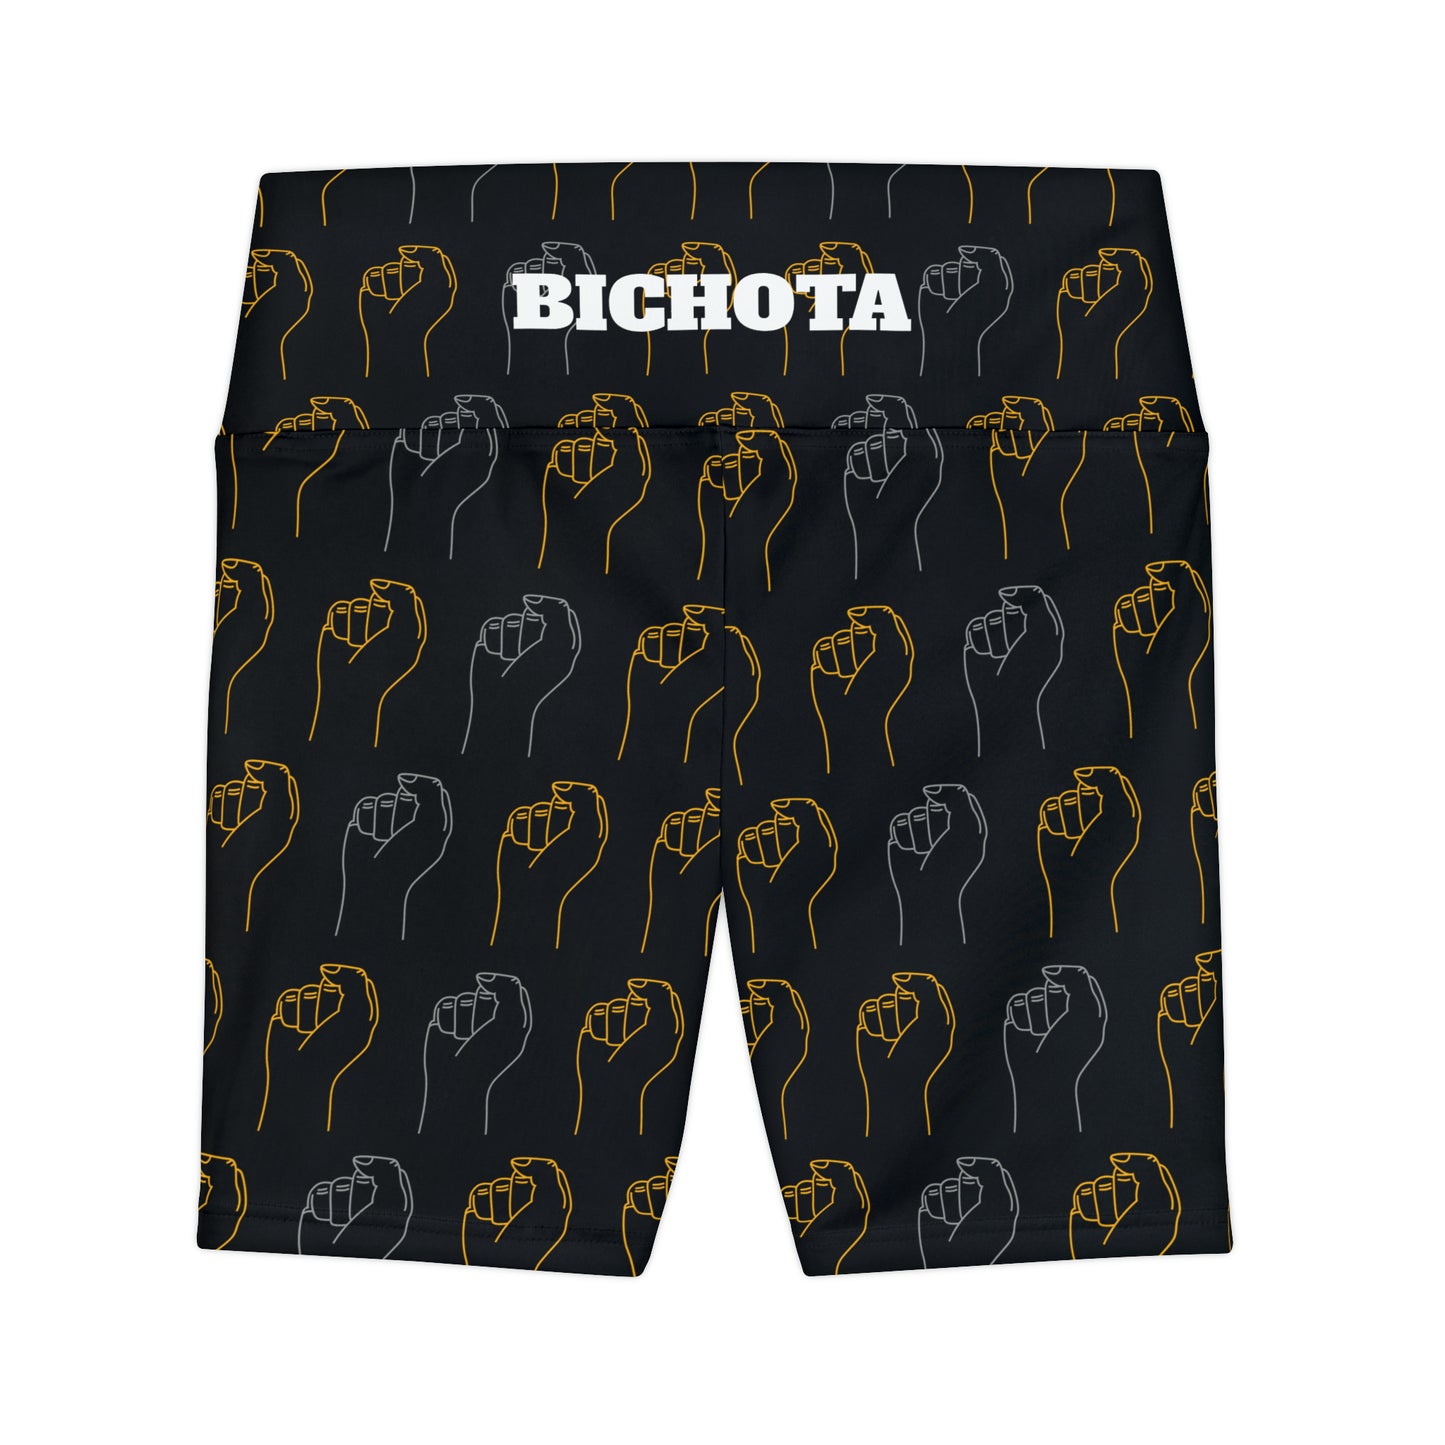 BICHOTA Workout Shorts